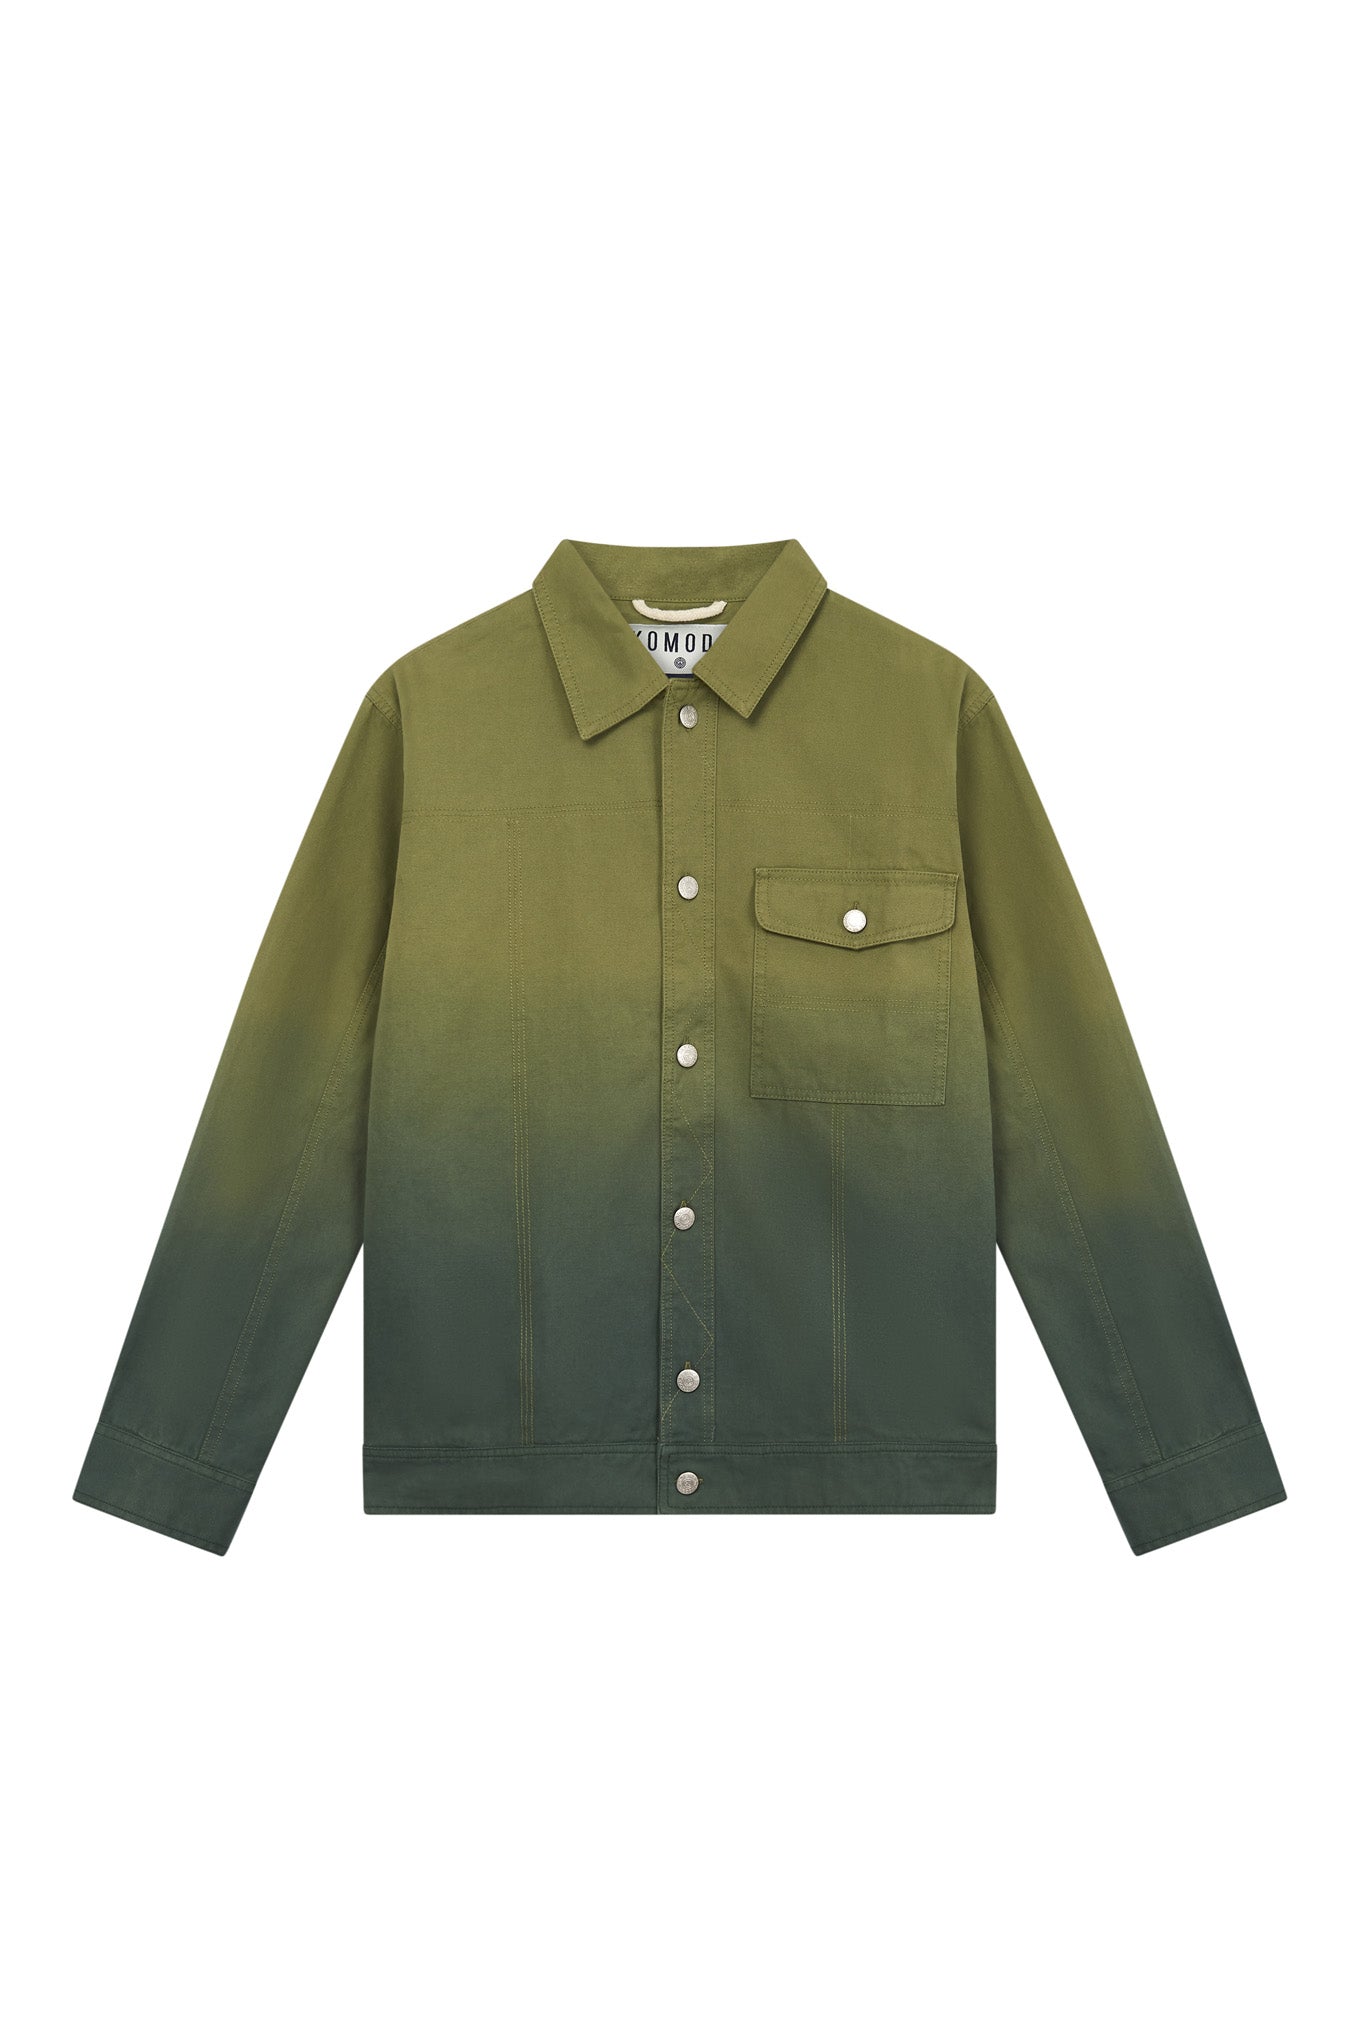 ORINO Dip Dyed Mens Jacket - Khaki Green, Medium